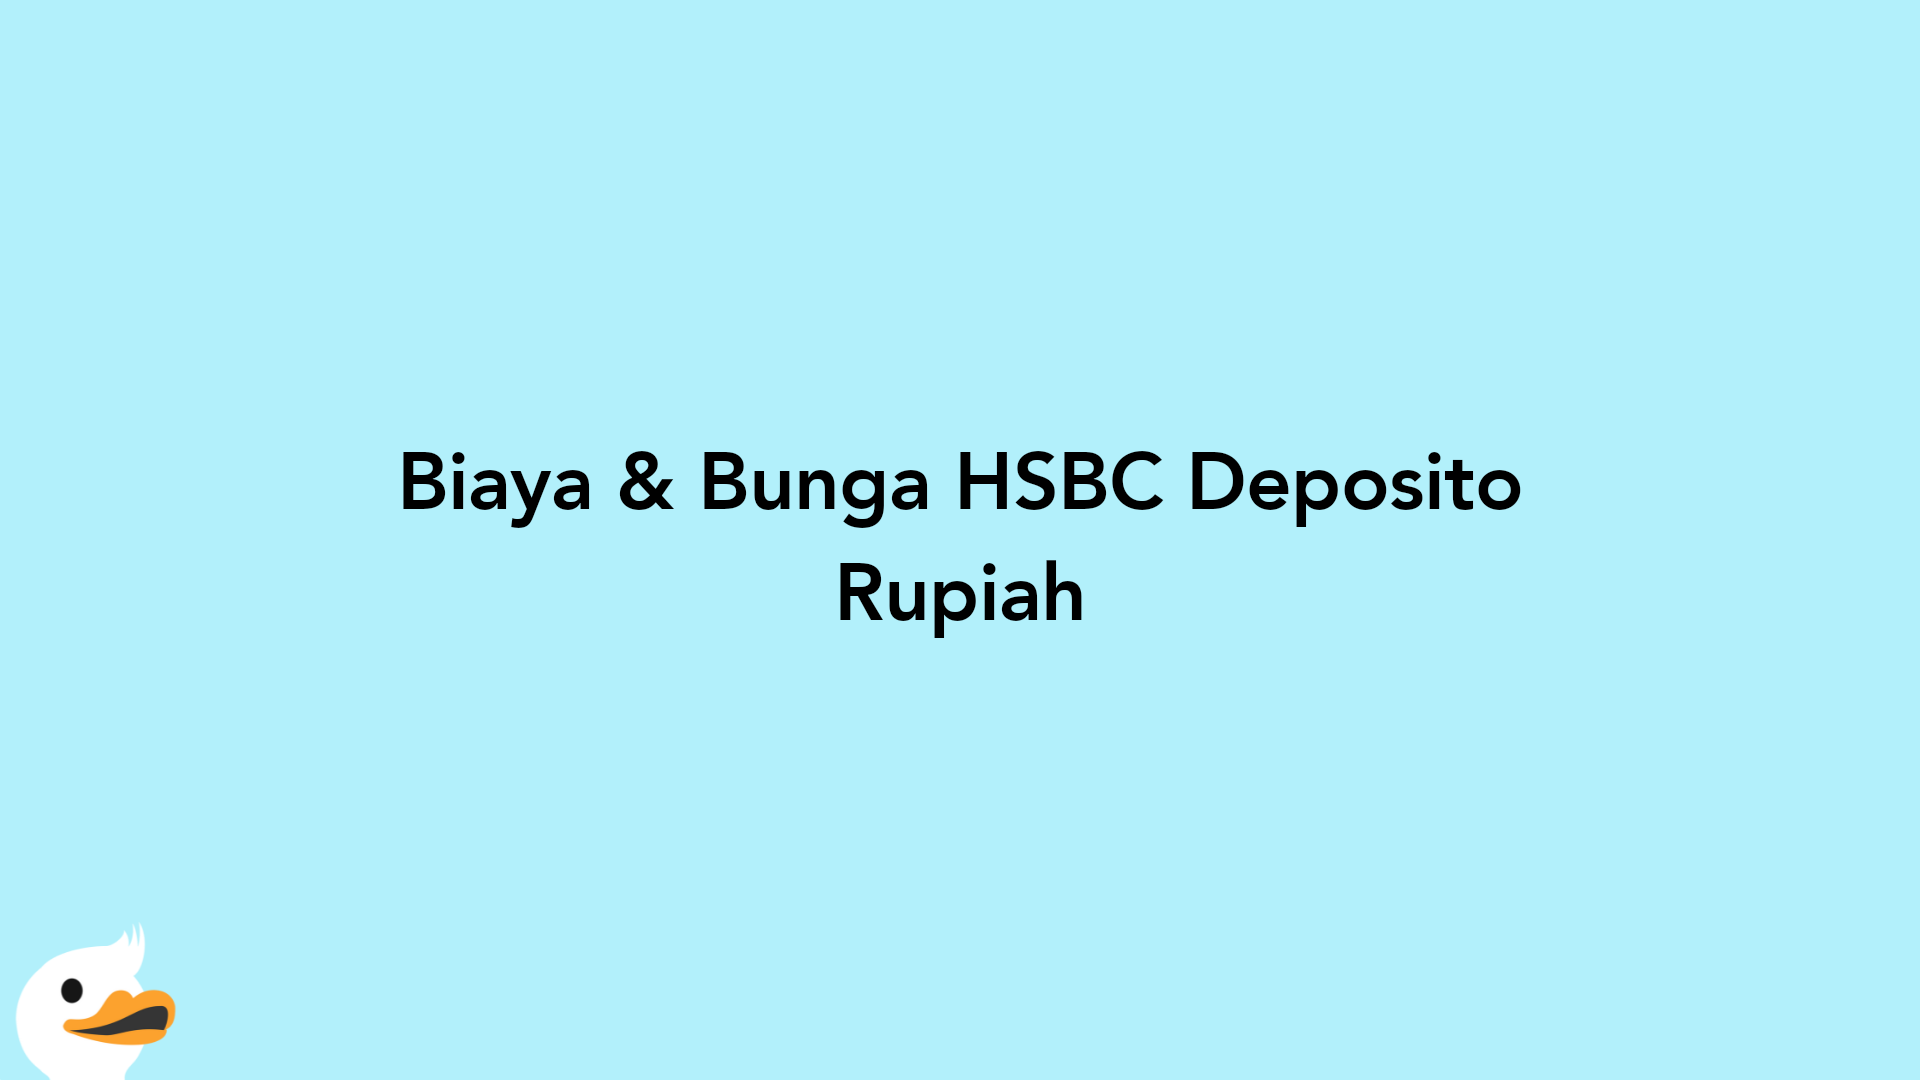 Biaya & Bunga HSBC Deposito Rupiah